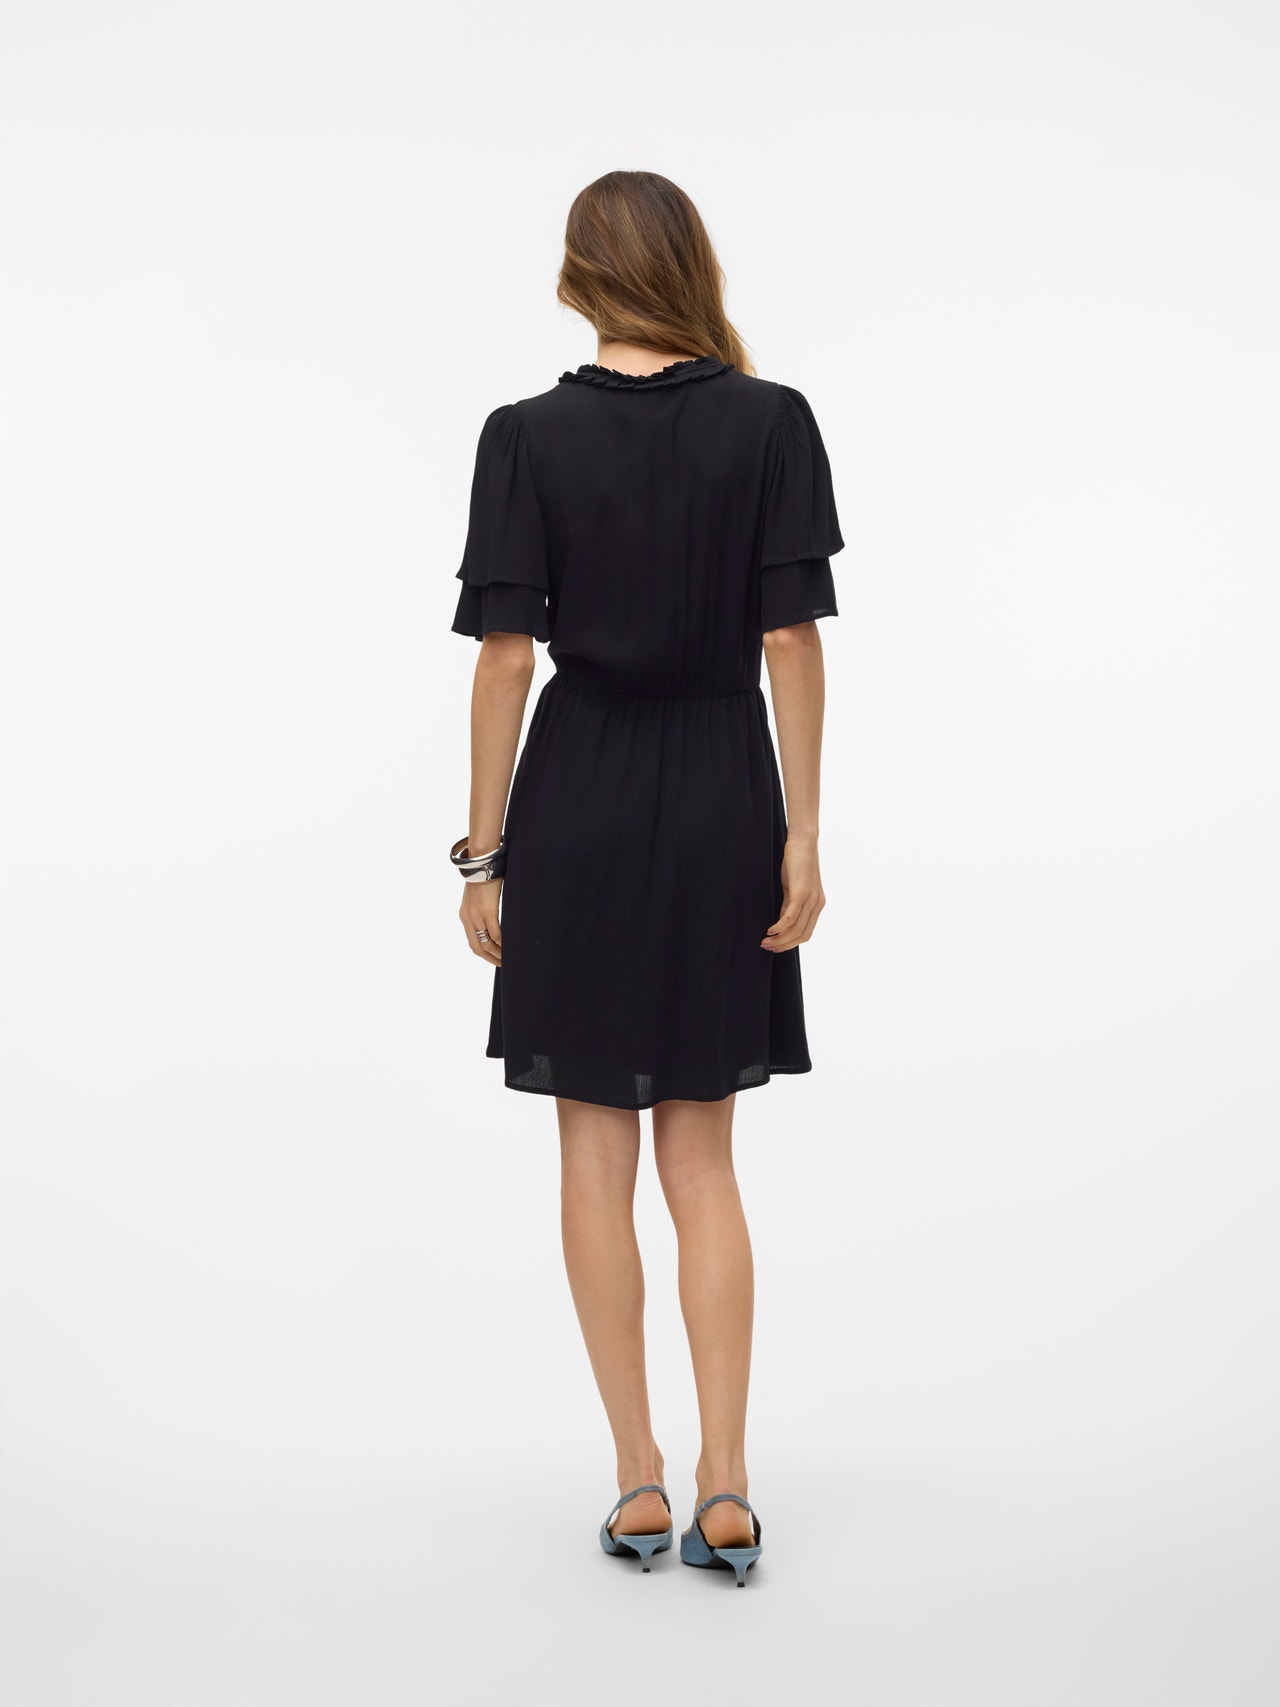 Vero Moda VMSINA Short dress -Black - 10314161